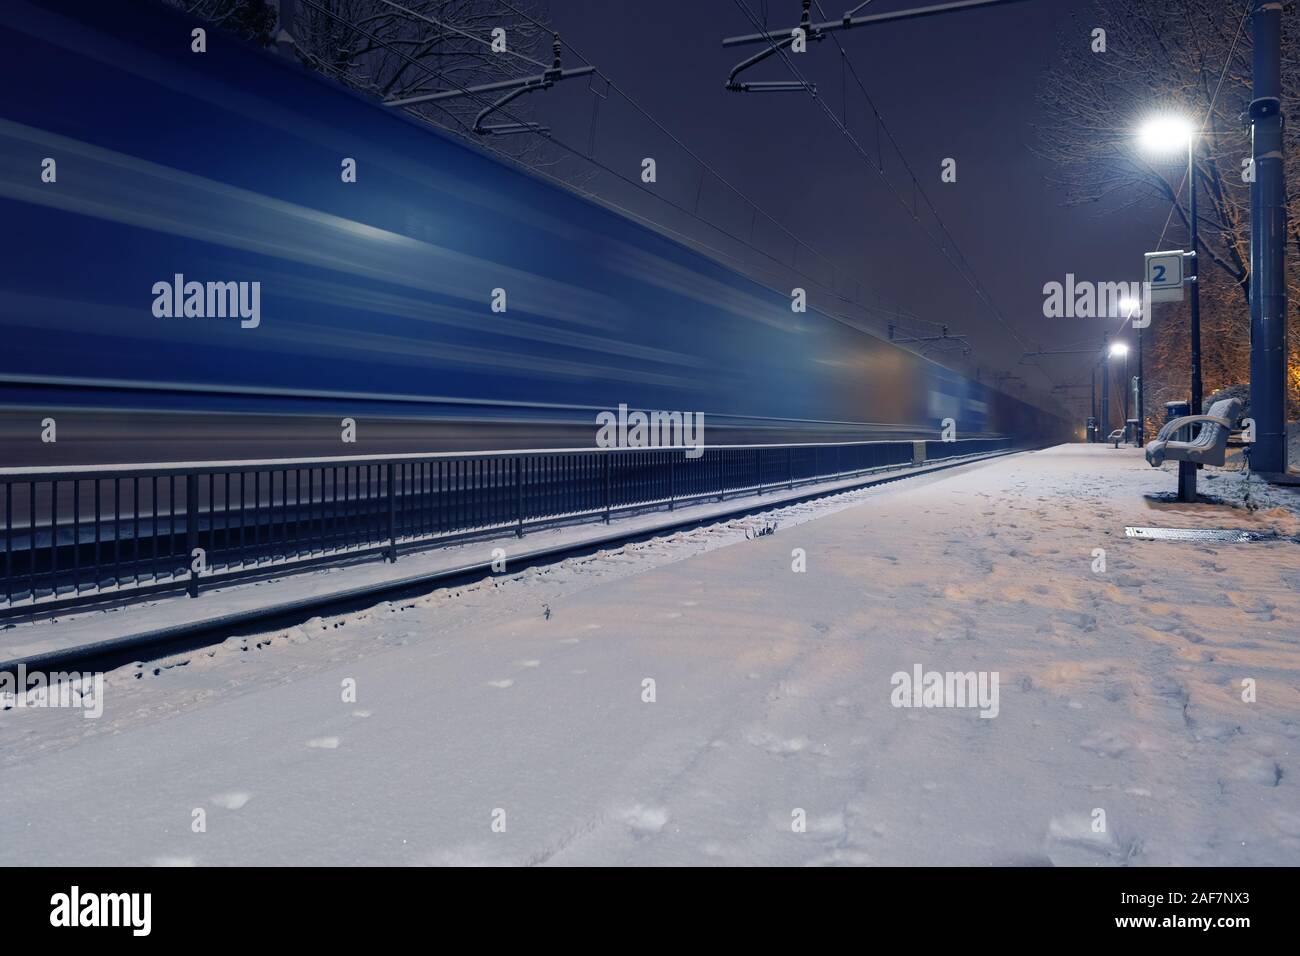 Le train de marchandises passant dans blurred motion à la gare sur une nuit d'hiver. Concepts de service de transport et de logistique Banque D'Images